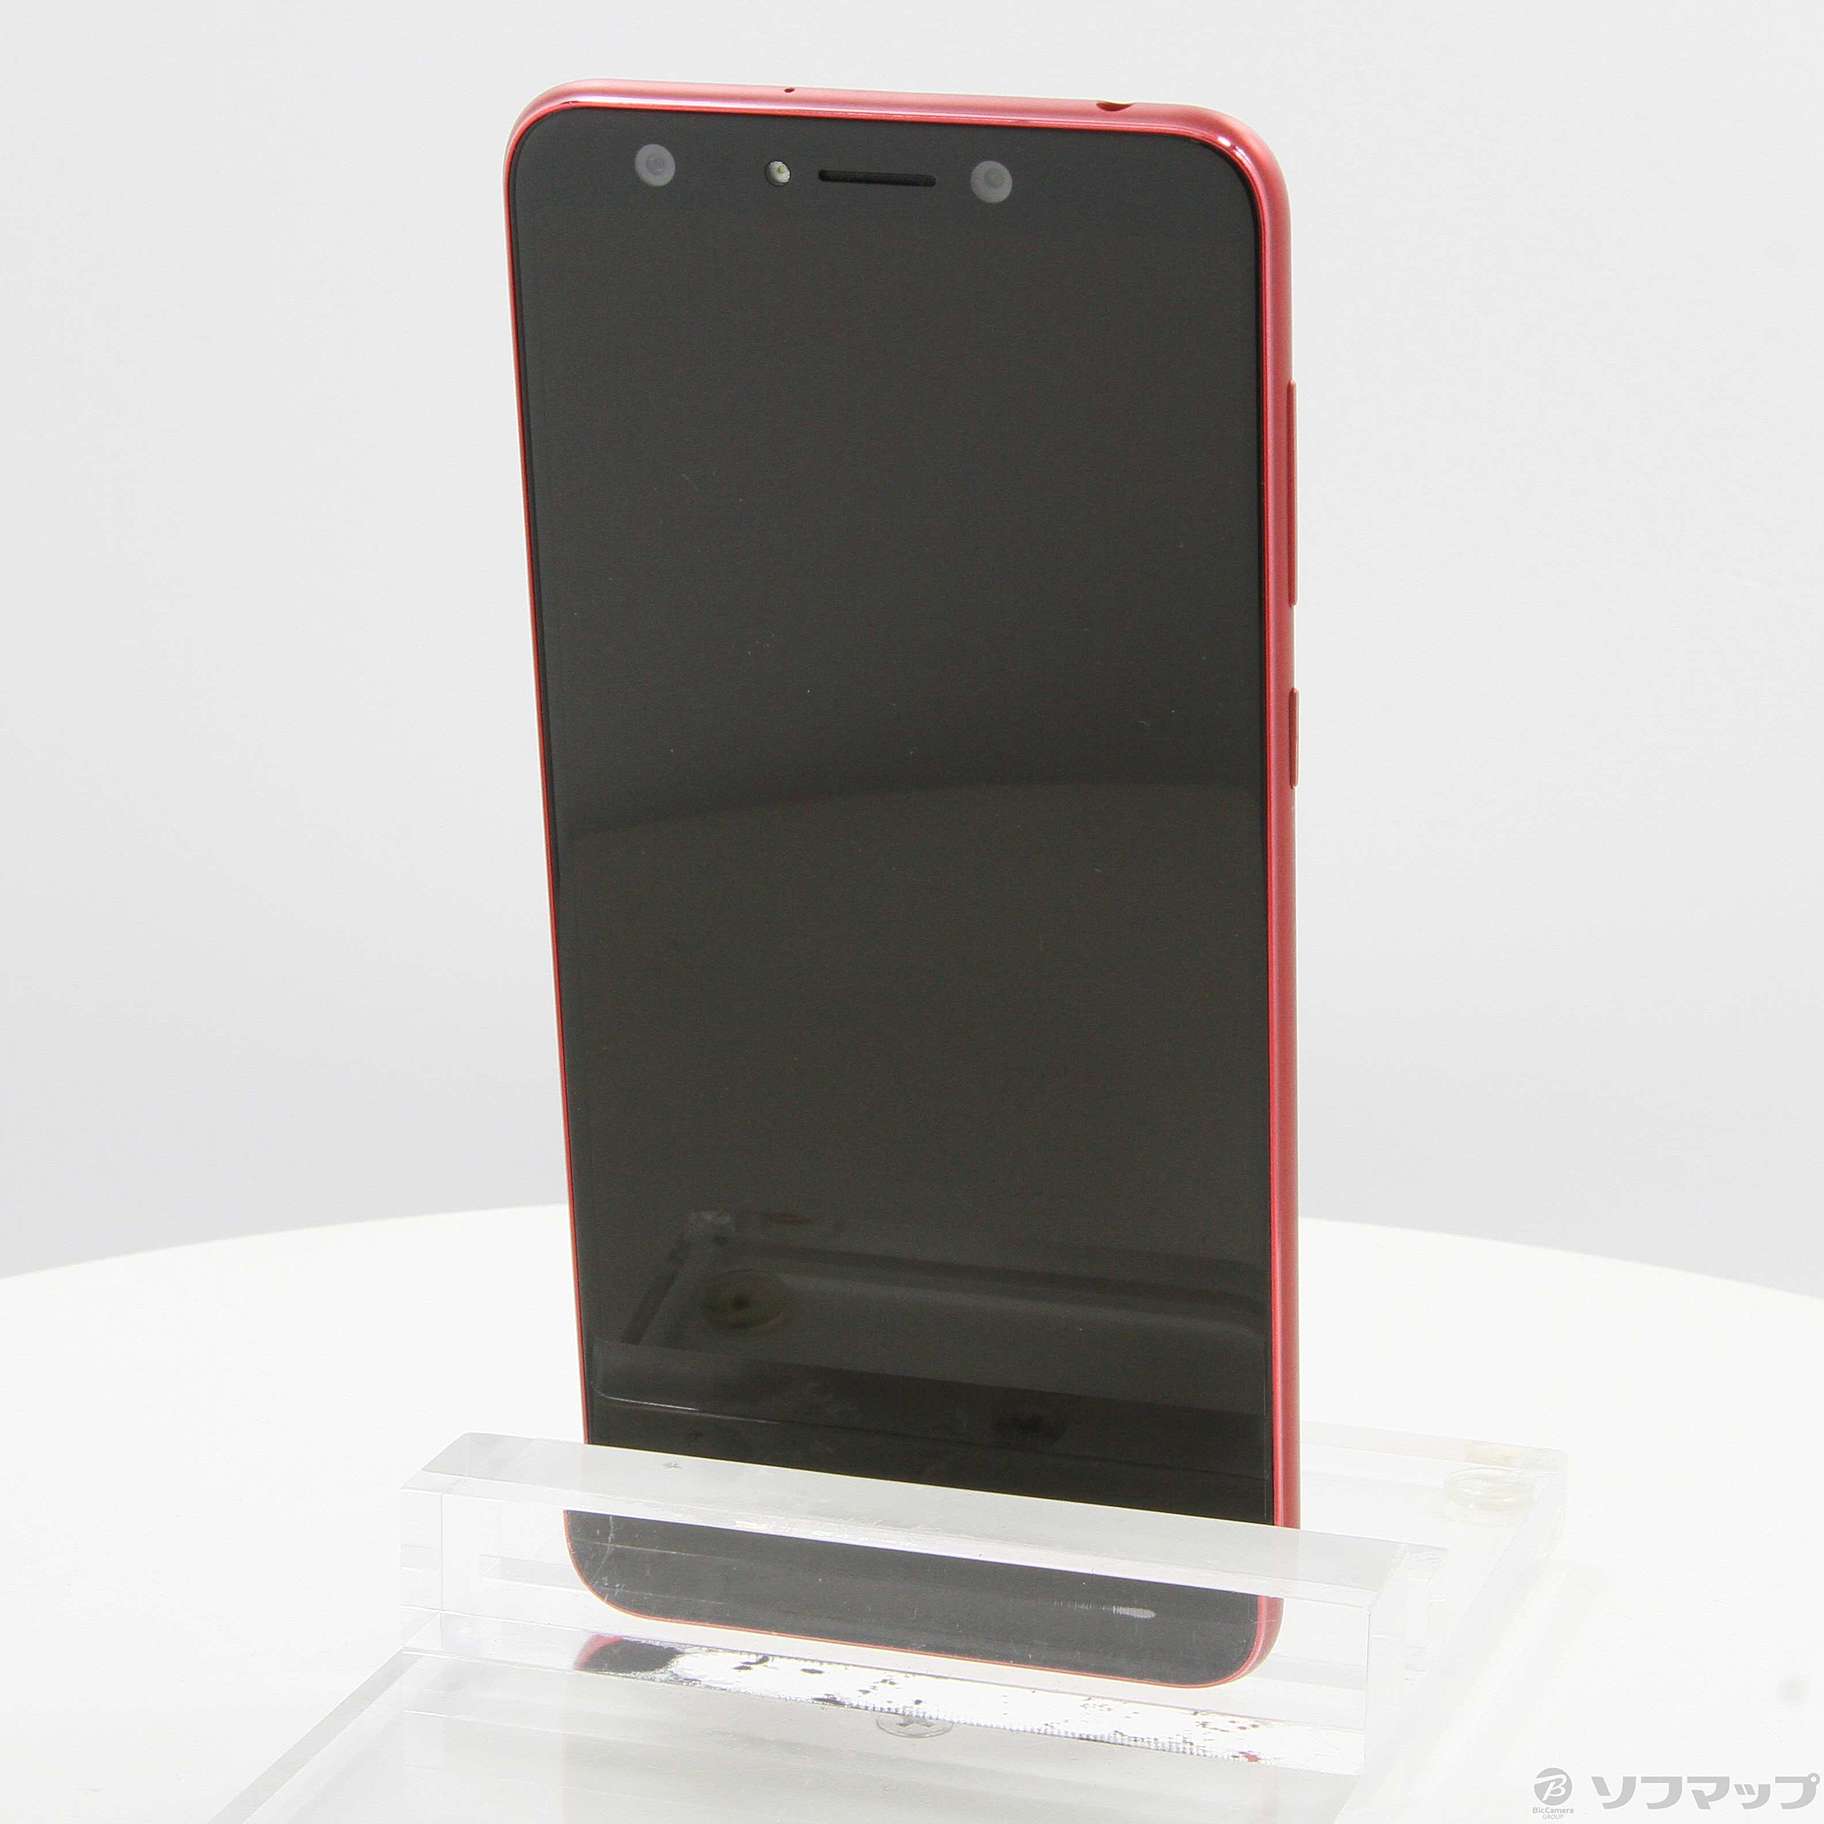 中古】ZenFone 5Q 64GB ルージュレッド ZC600KL-RD64S4 SIMフリー